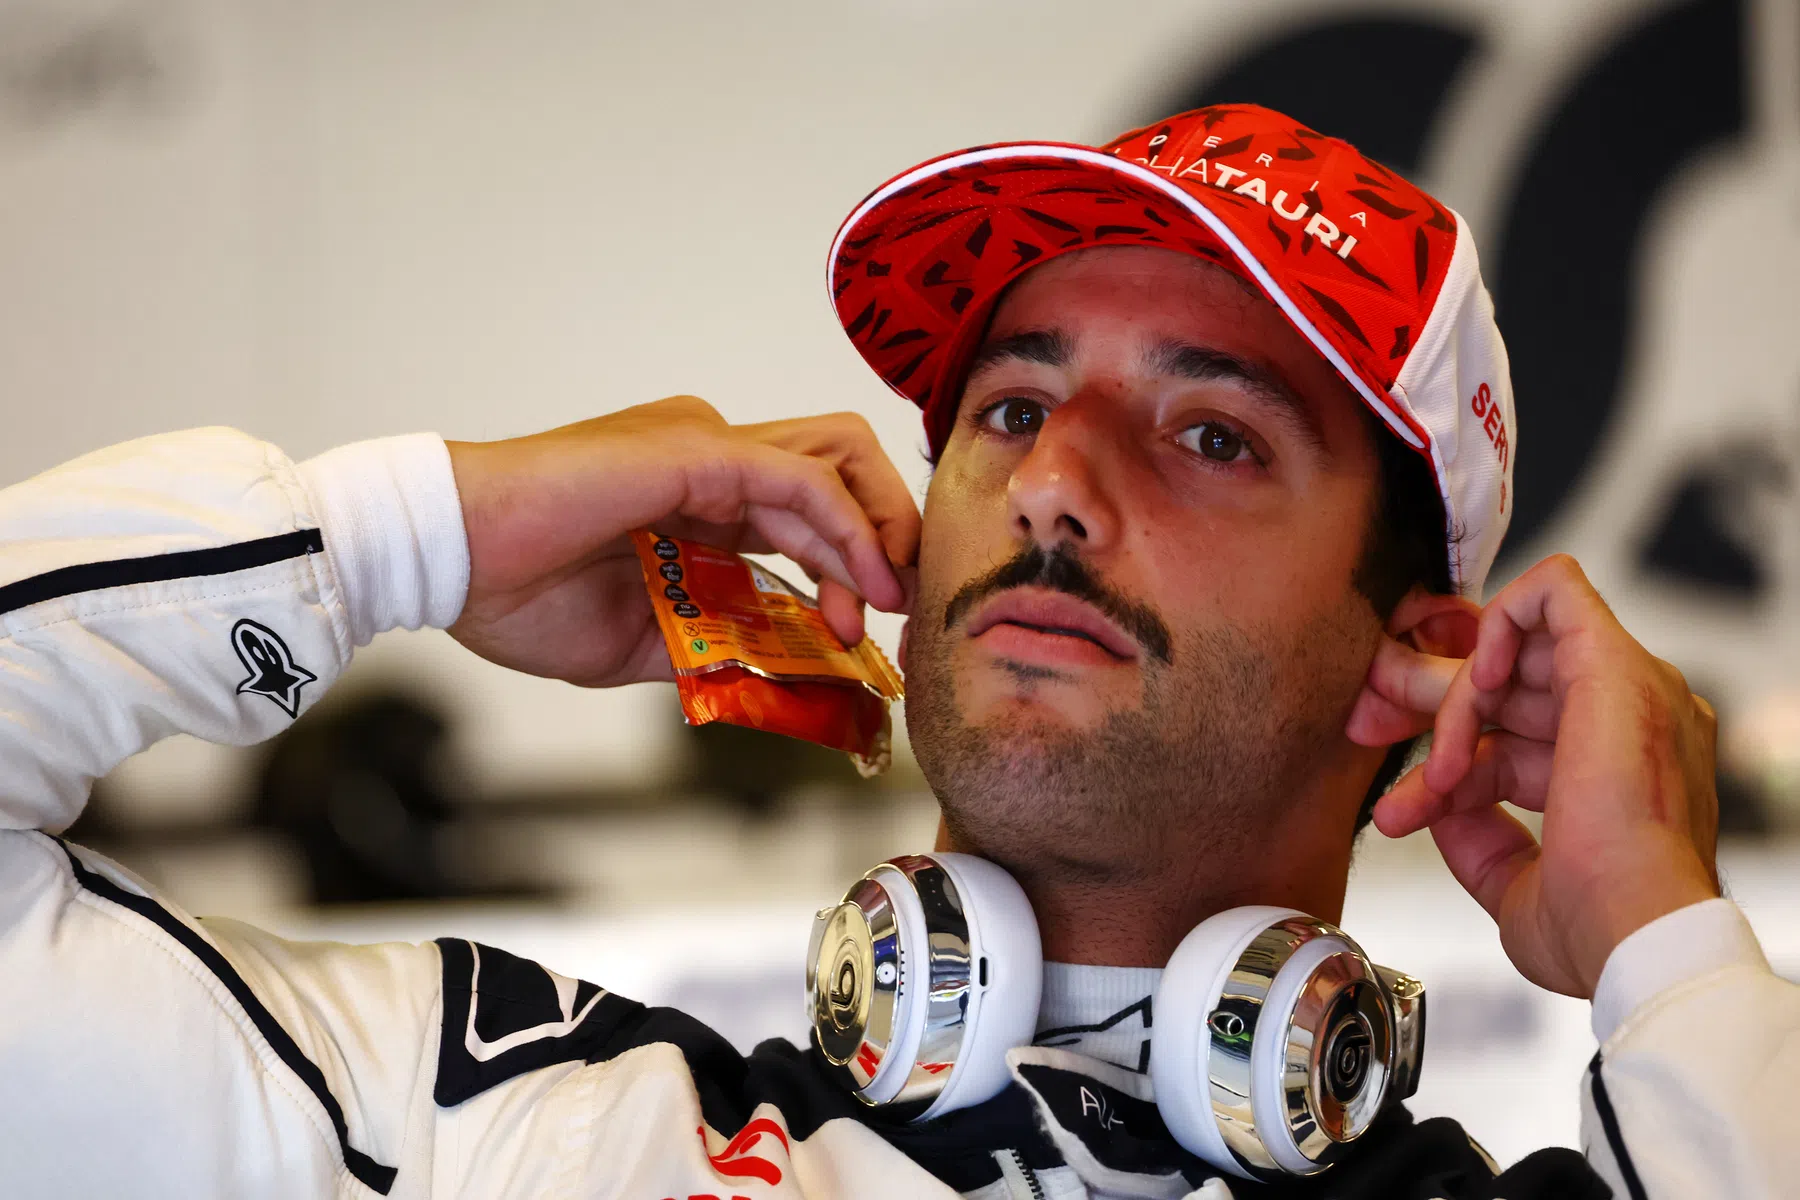 Ricciardo admite interesse em vaga na Red Bull: Sei o que é necessário